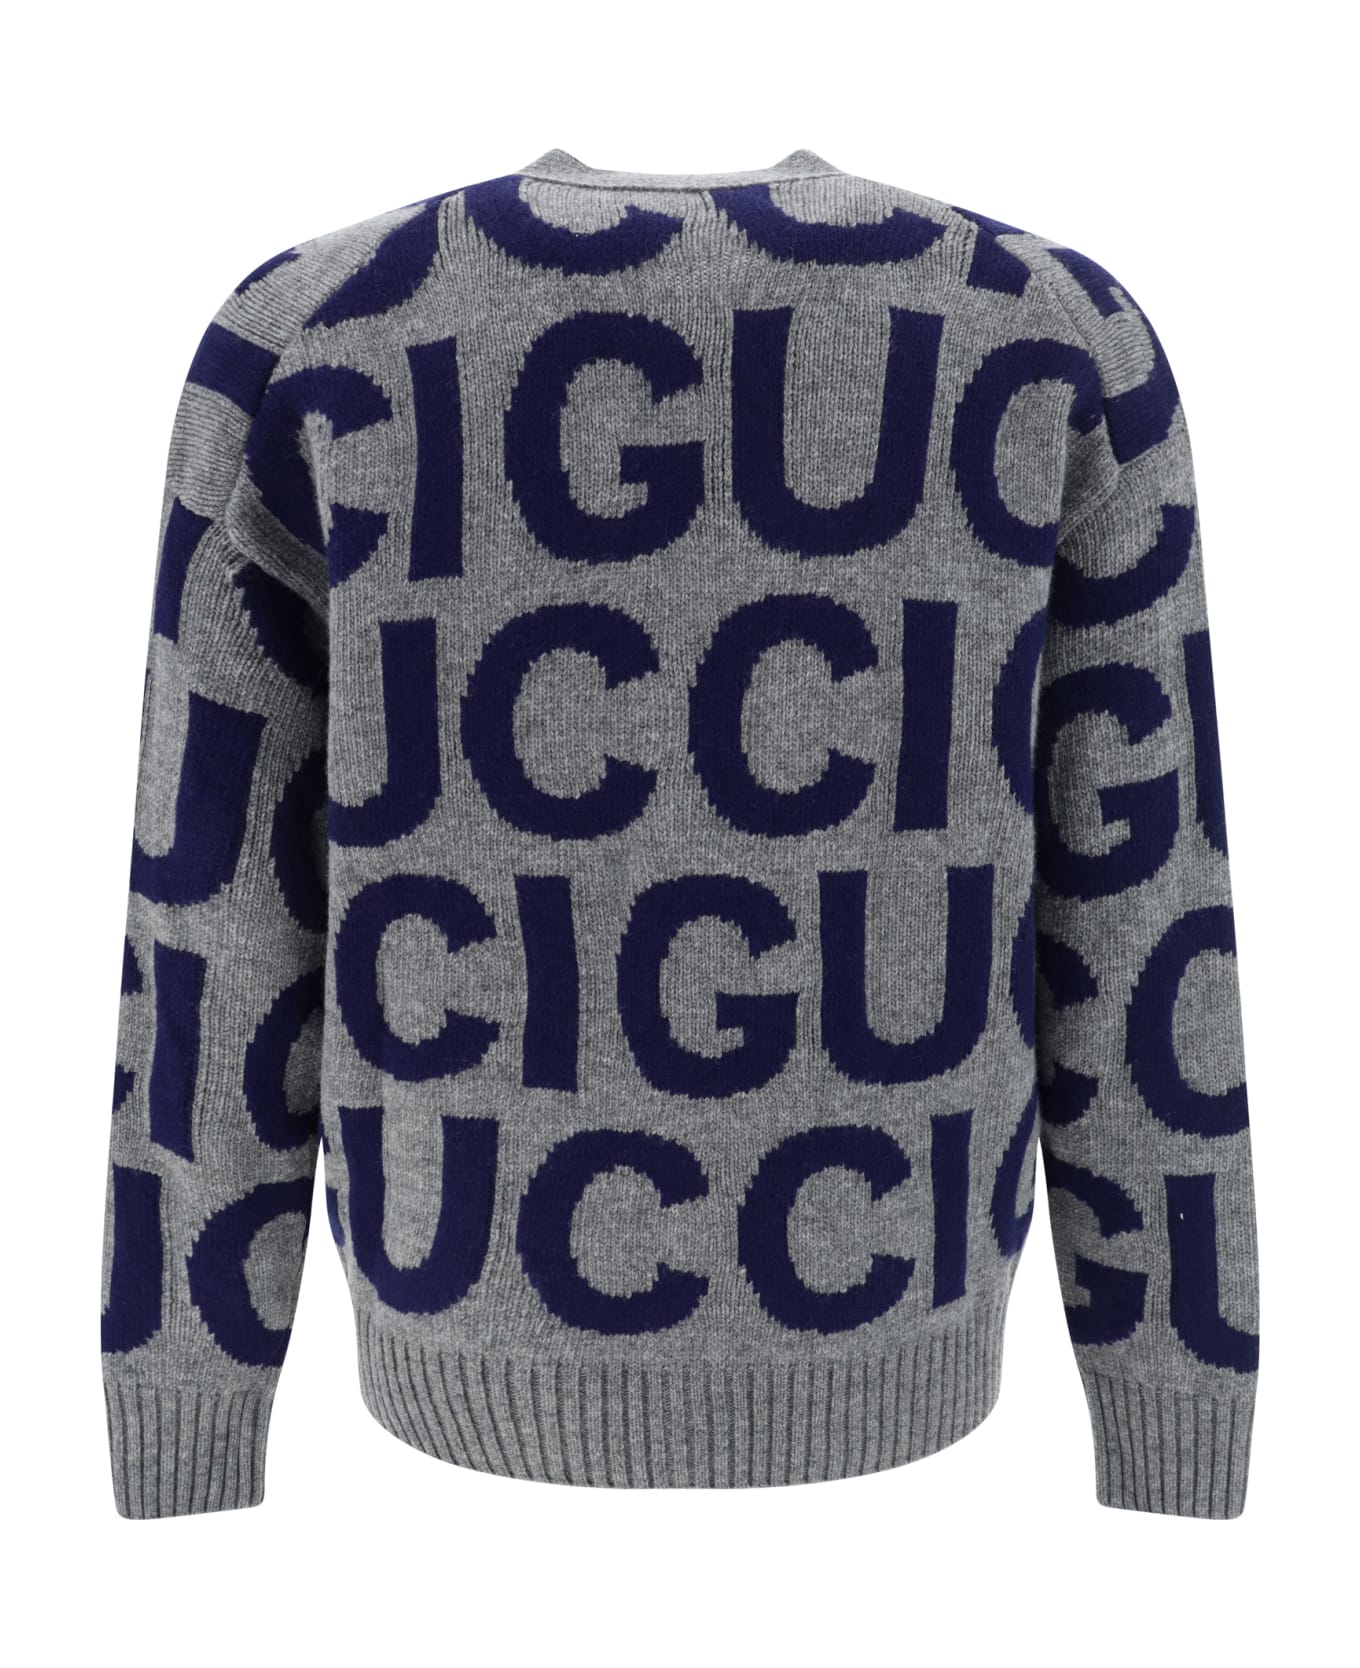 Gucci Cardigan - Grey/blue カーディガン